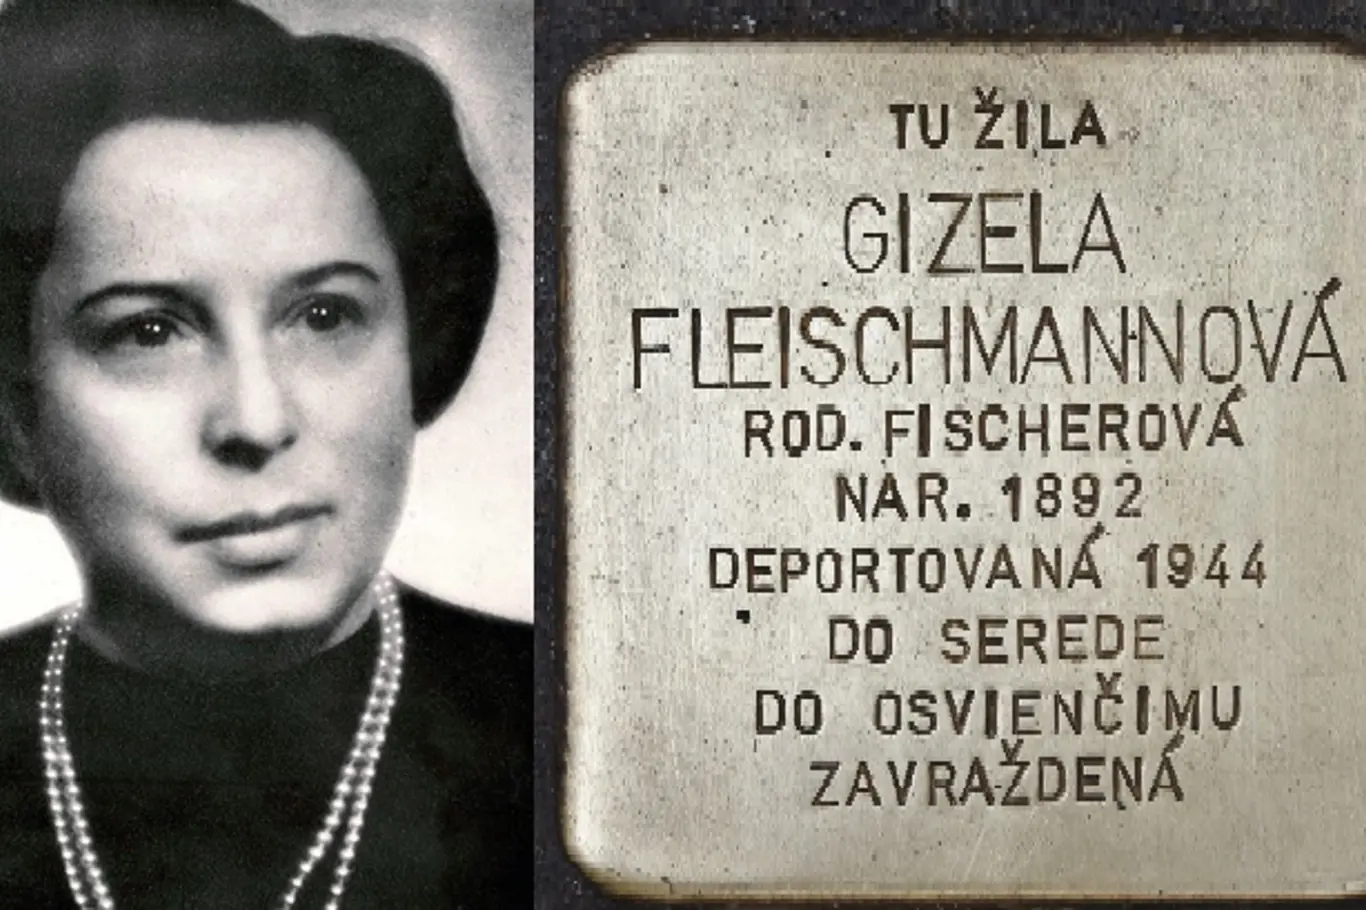 Gisi Fleischmannová zachraňovala Židy před nacistickým ohrožením a smrtí v koncentračních táborech během druhé světové války. Byla jednou z mála žen v řadách židovských bojovníků proti nacismu.